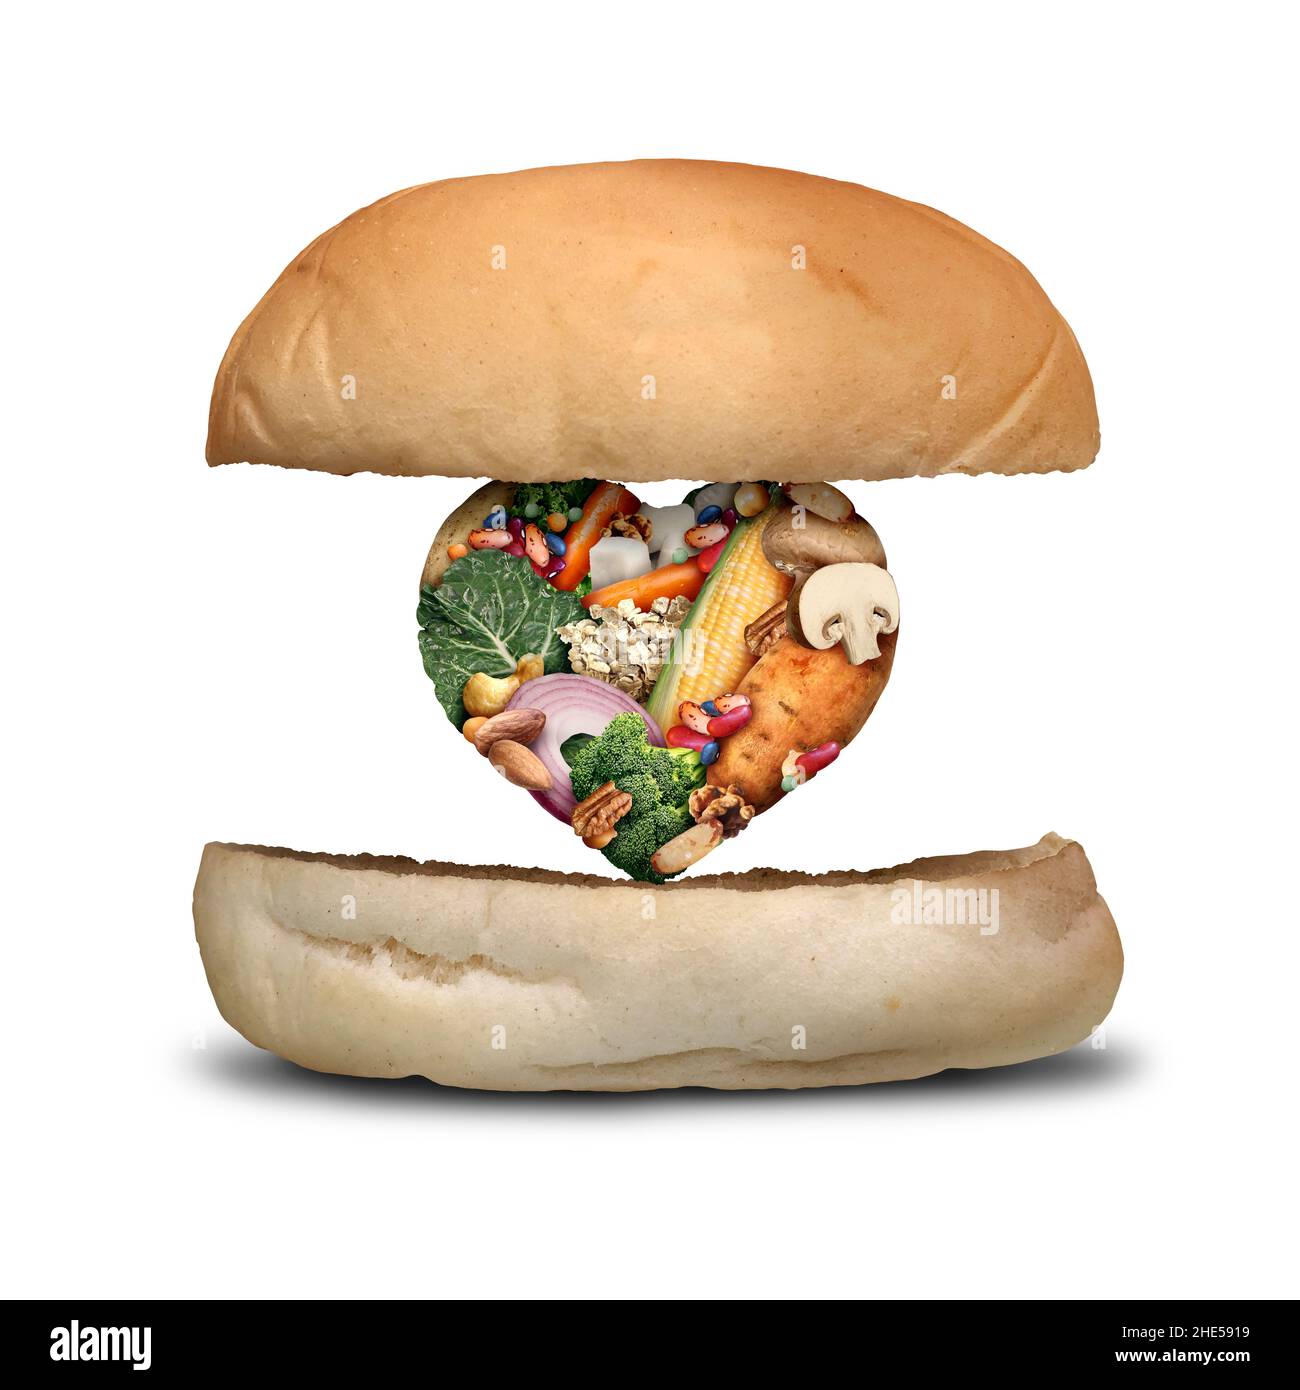 Vegan Burger concept comme patty végétalienne à base de plantes pour hamburgers dans un régime végétarien fait avec des haricots pommes de terre légumes champignons en forme de coeur. Banque D'Images